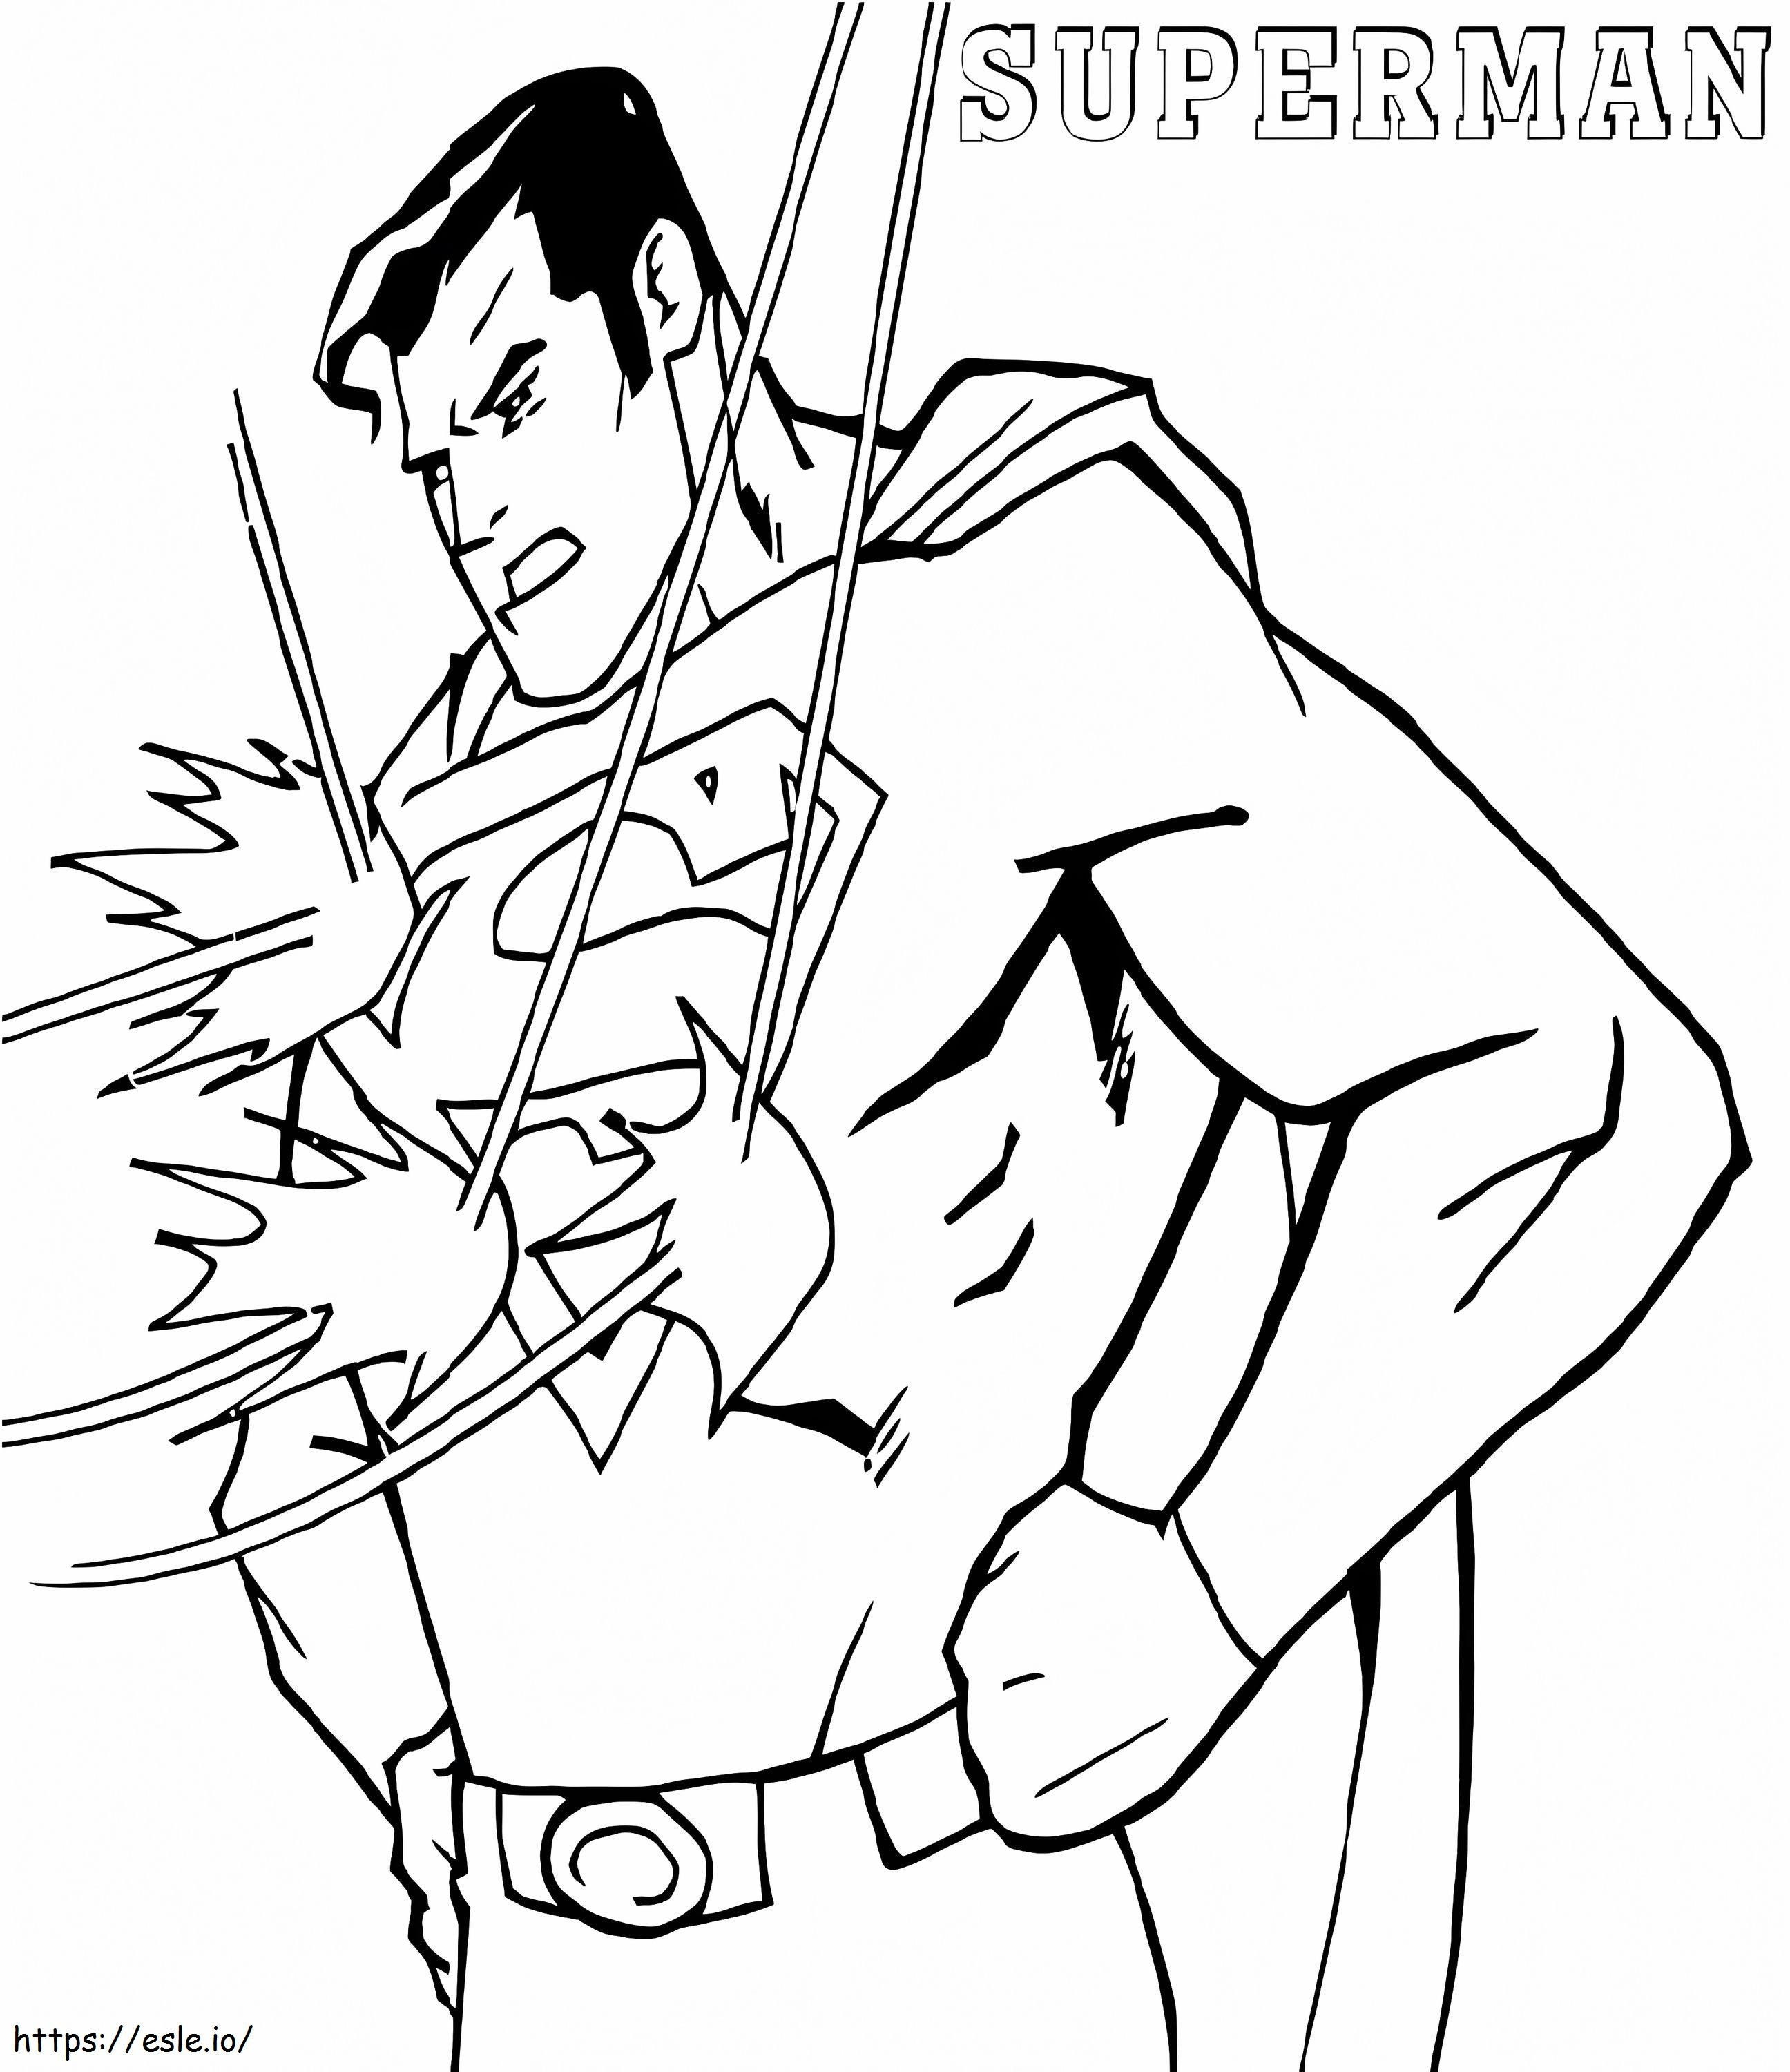 Superman a prova di proiettile da colorare